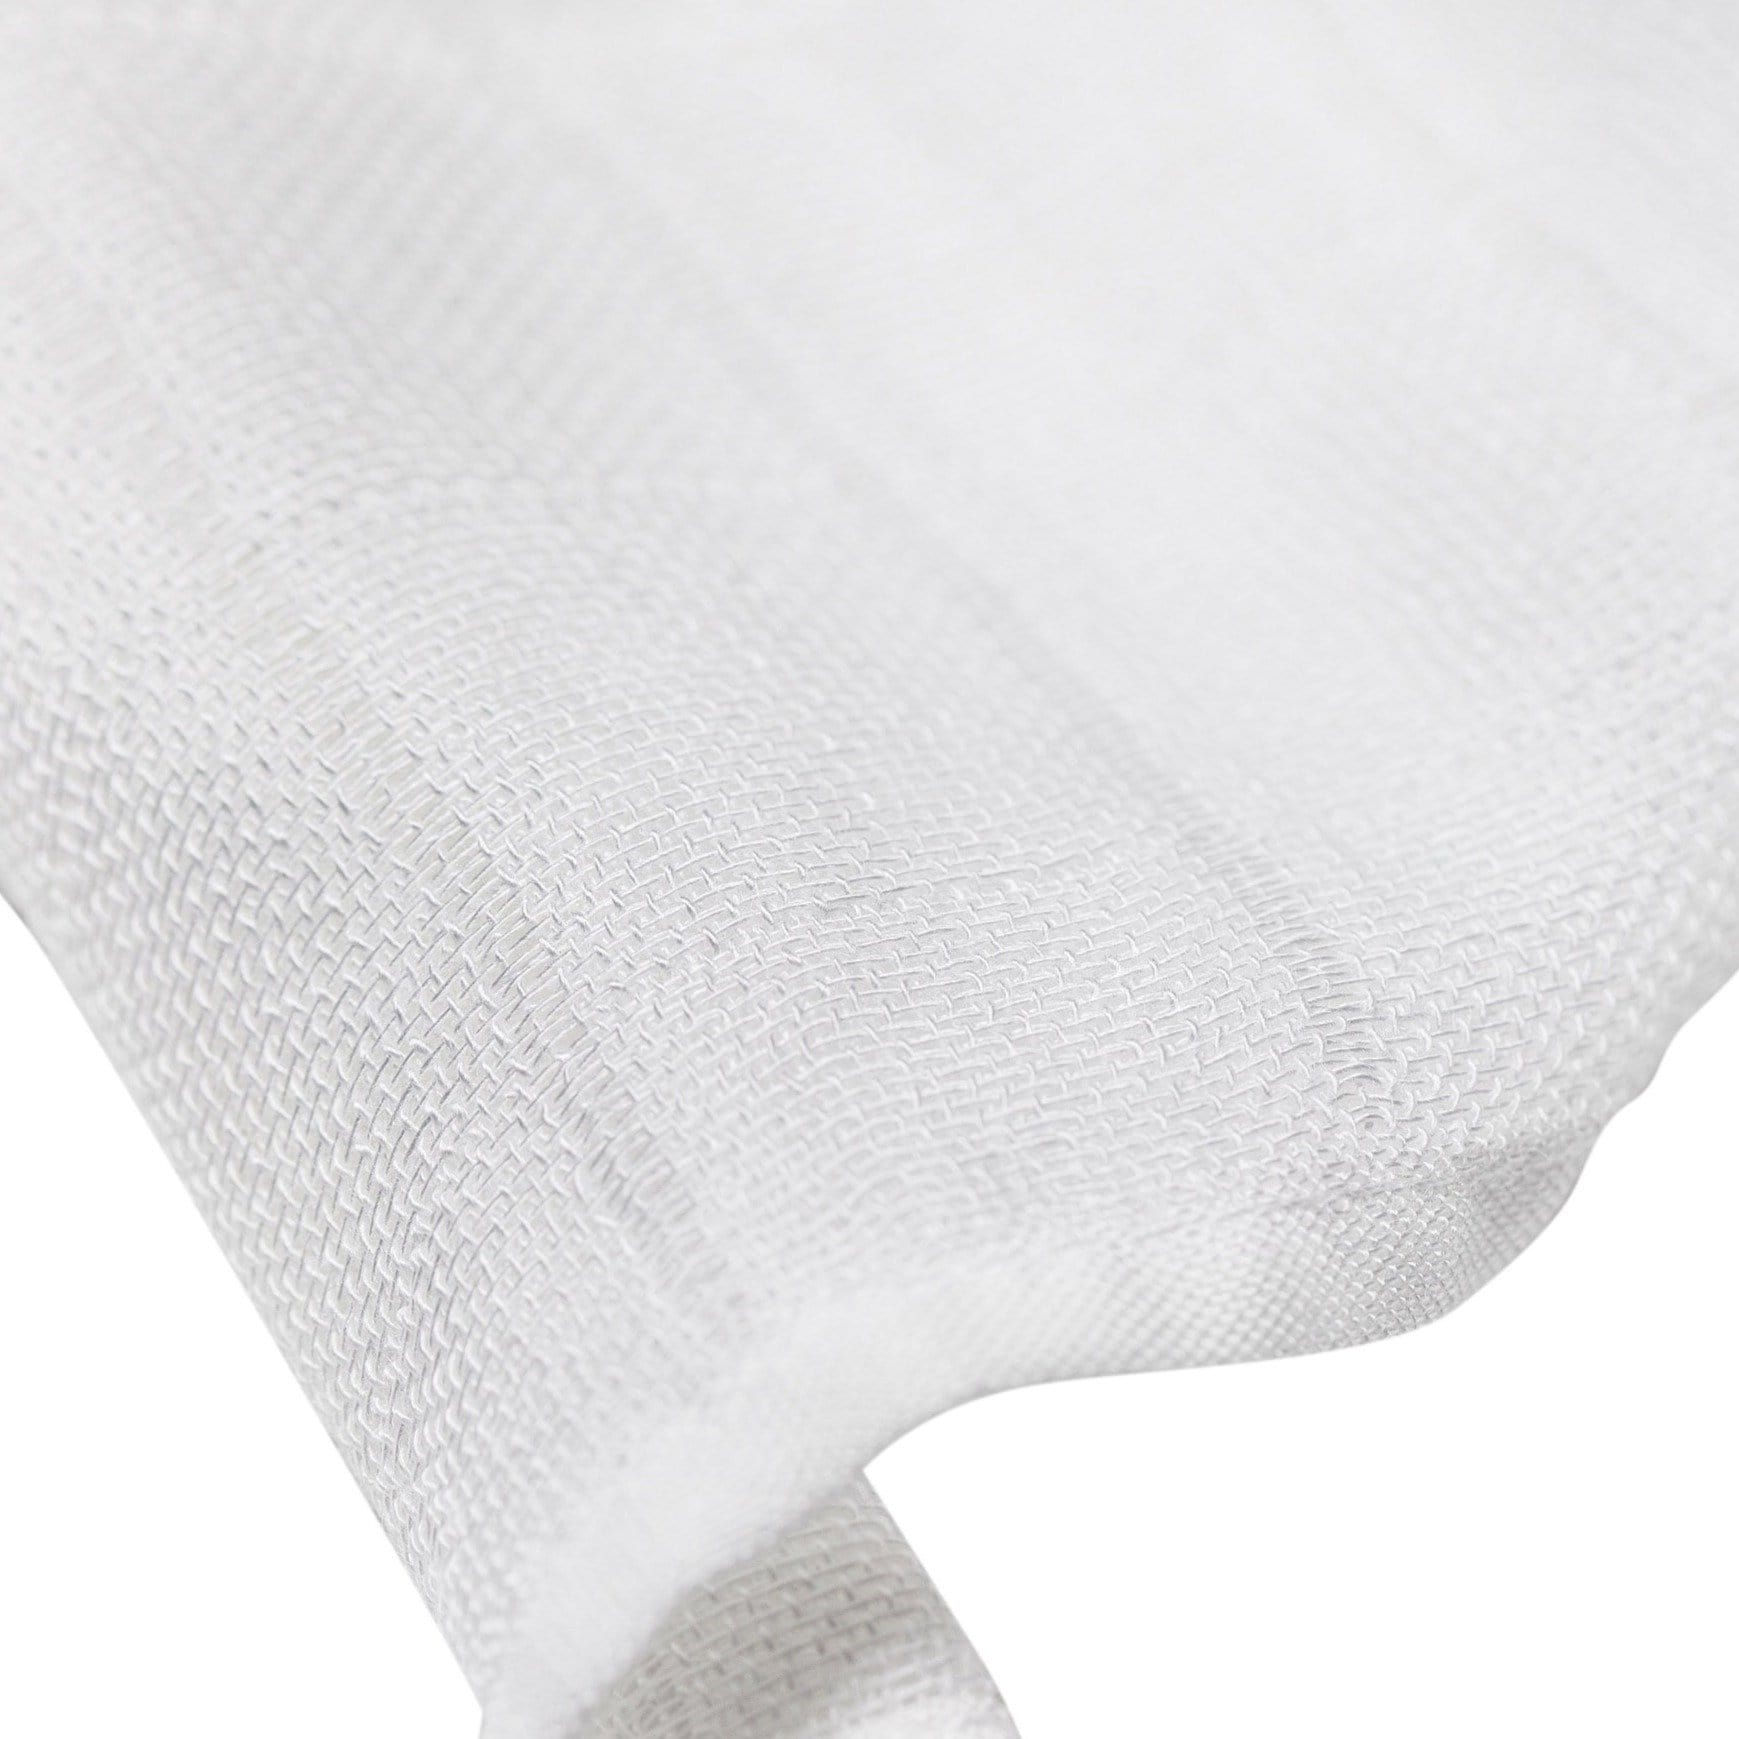 100% bambo muslin fabric white